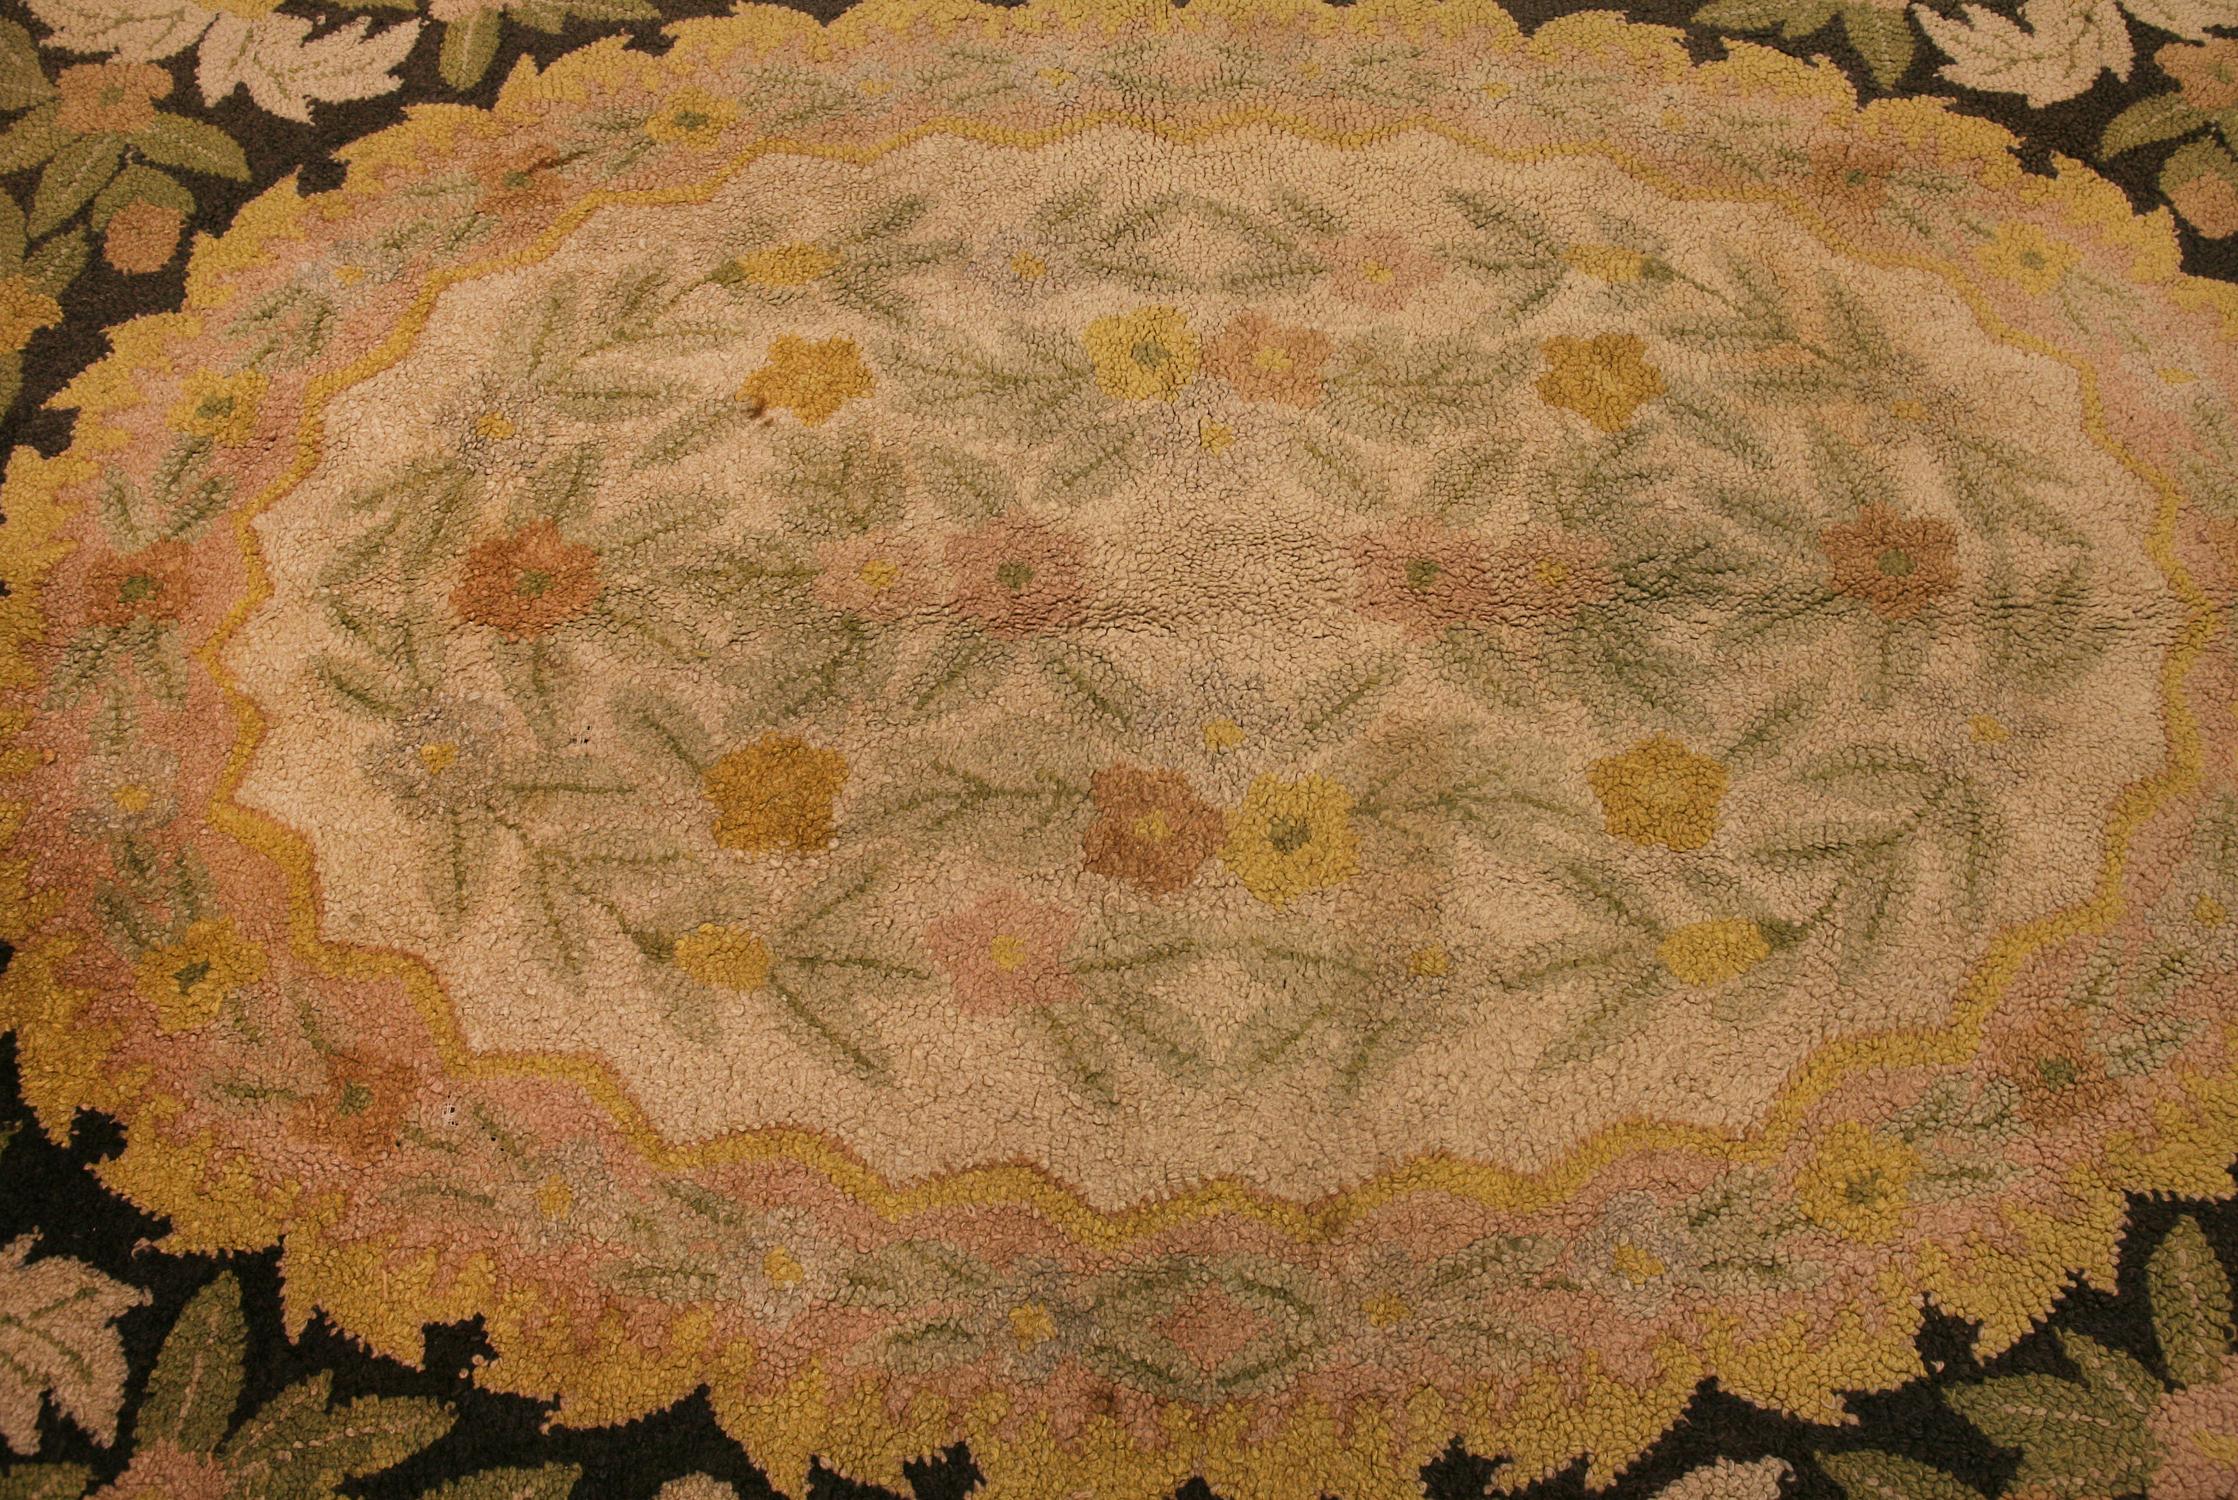 Dies ist ein amerikanischer Hakenteppich, der in den Vereinigten Staaten in den 1920er Jahren gewebt wurde und 265 x 170 cm misst. Dieser Teppich hat eine ovale Form, wie viele amerikanische Hakenteppiche. Es wurde mit einer Blumenbordüre und einem